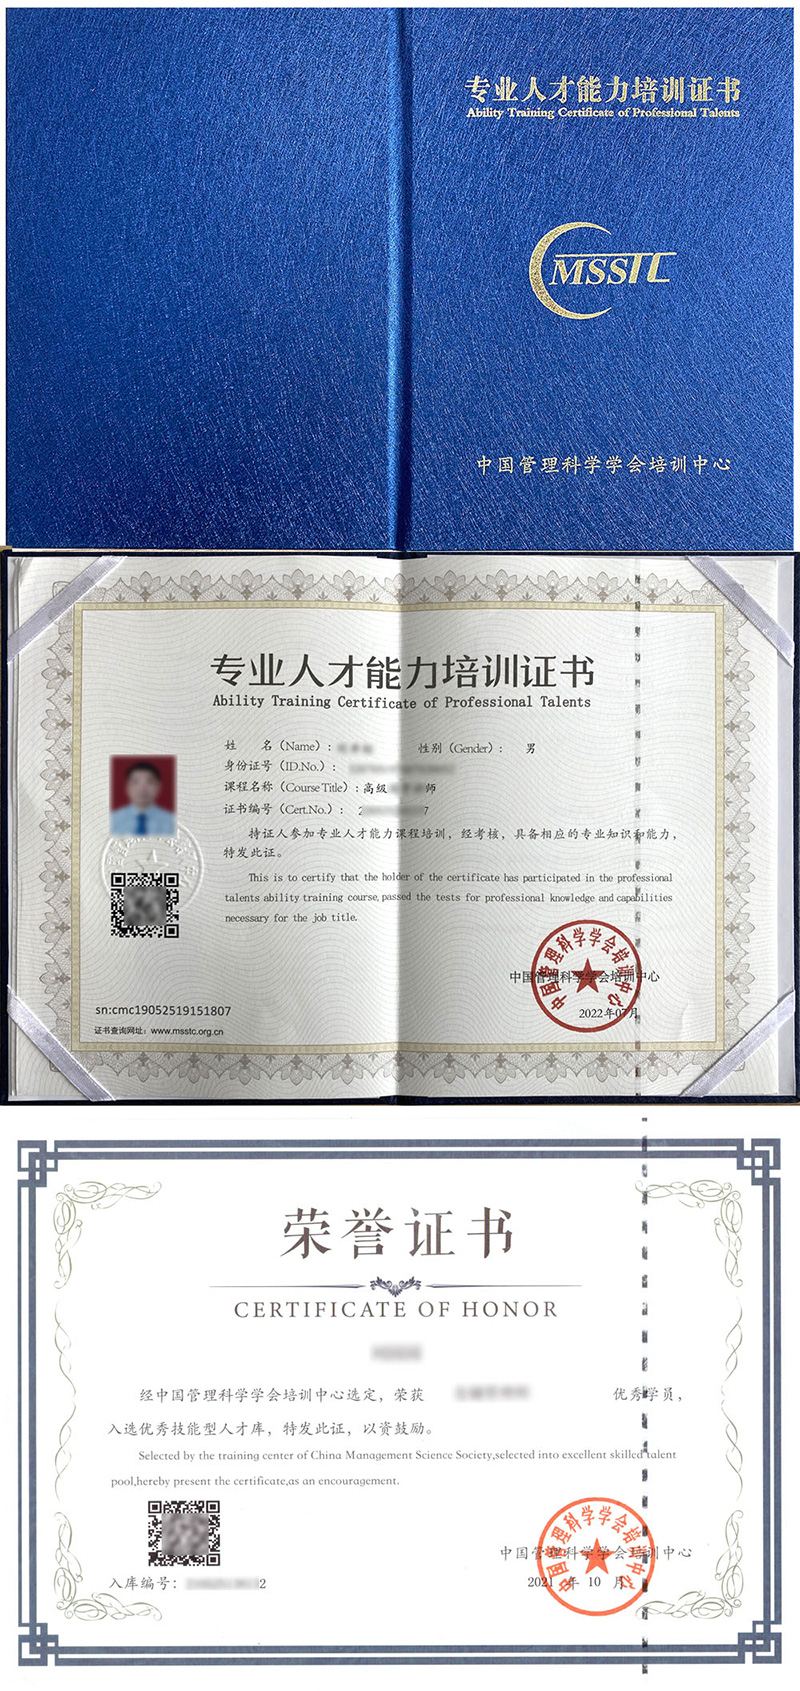 中国管理科学学会培训中心 专业人才能力培训证书 面点师证证书样本